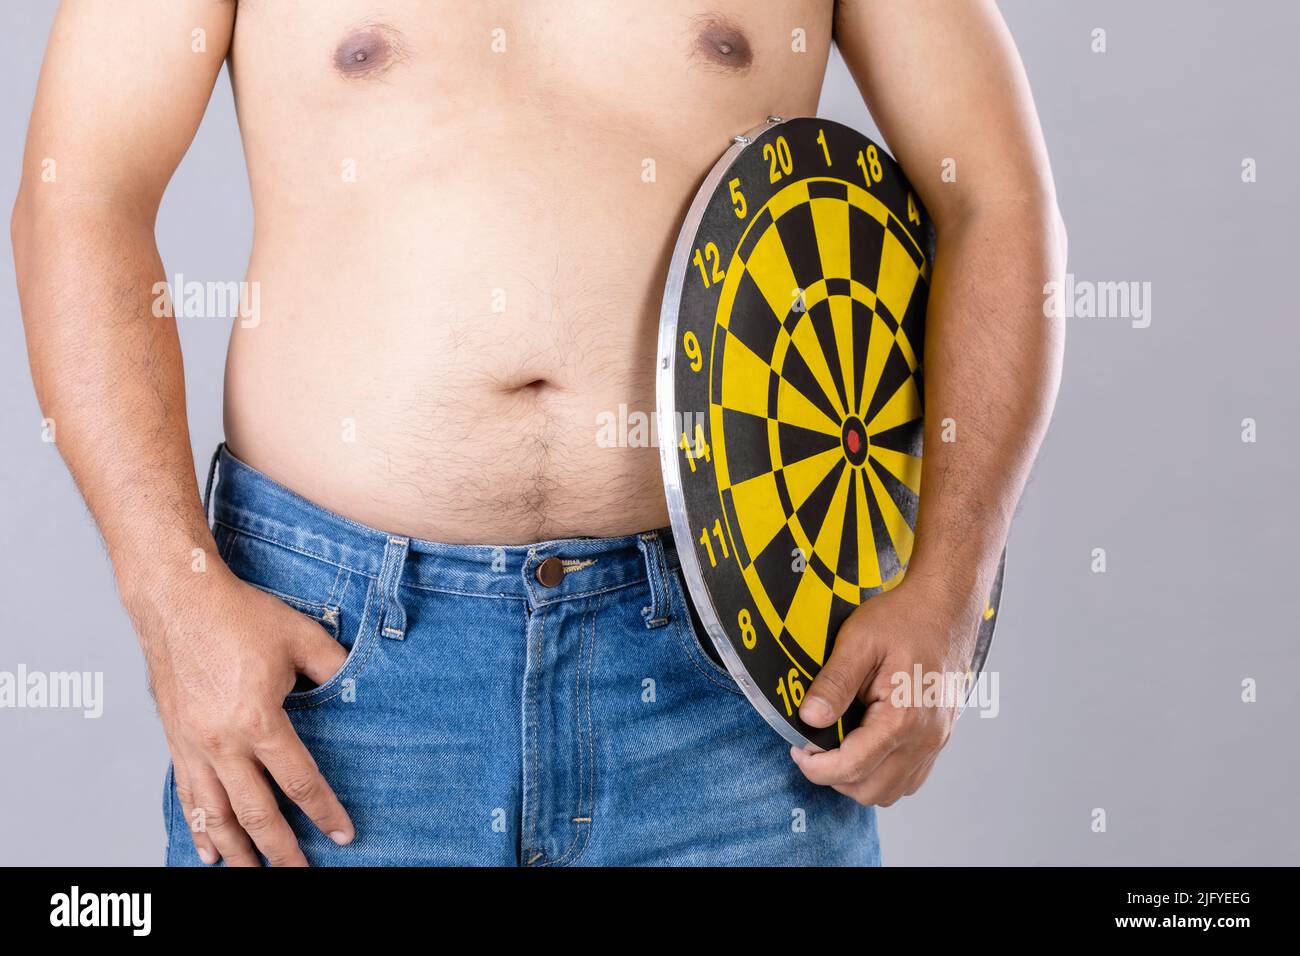 Fat Menschen halten rund gelbe Dartscheibe neben seinem Bauch Position. Ziel der Gewichtsverlust Konzept. Studioaufnahme isoliert auf grauem Hintergrund Stockfoto